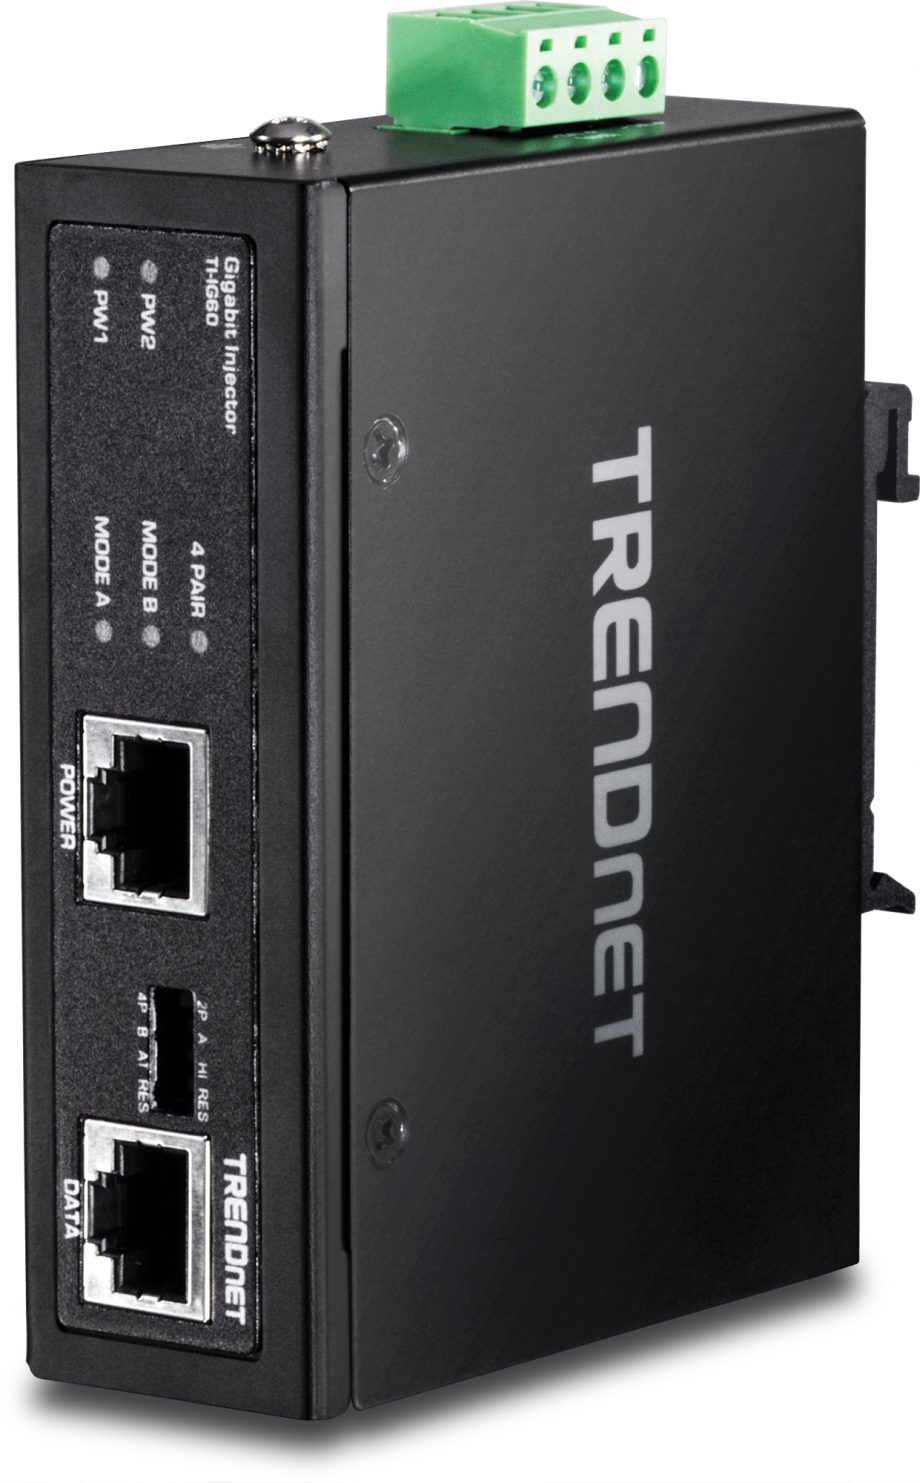 TRENDnet TI-IG60 Hardened Industrial 60 Watt Gigabit PoE+ Injector